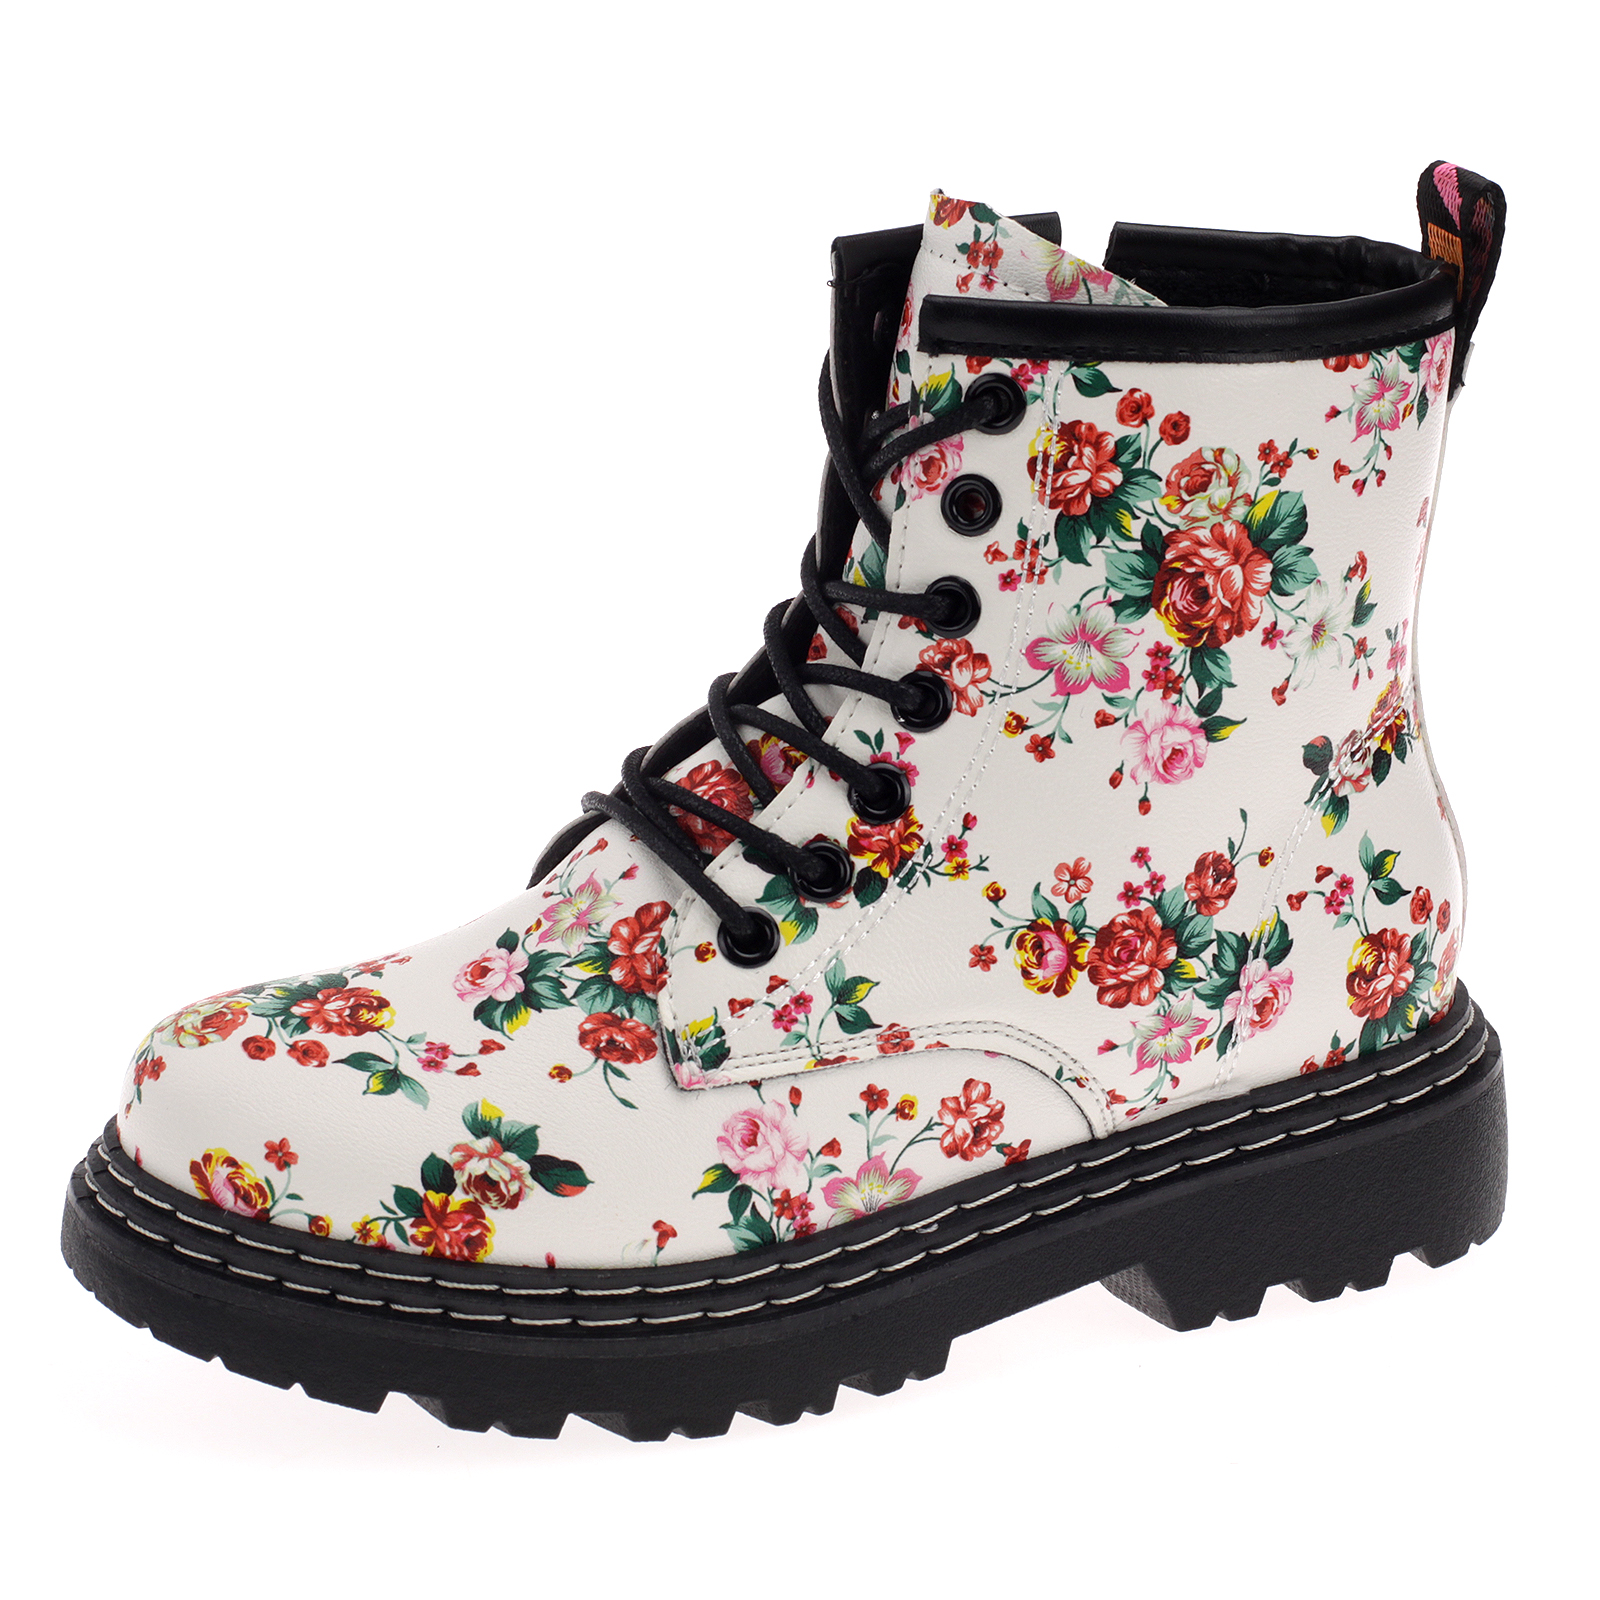 Damen Boots Stiefeletten Stiefel Gefütterte Schuhe Blumen Freizeit 20201-Green-pink